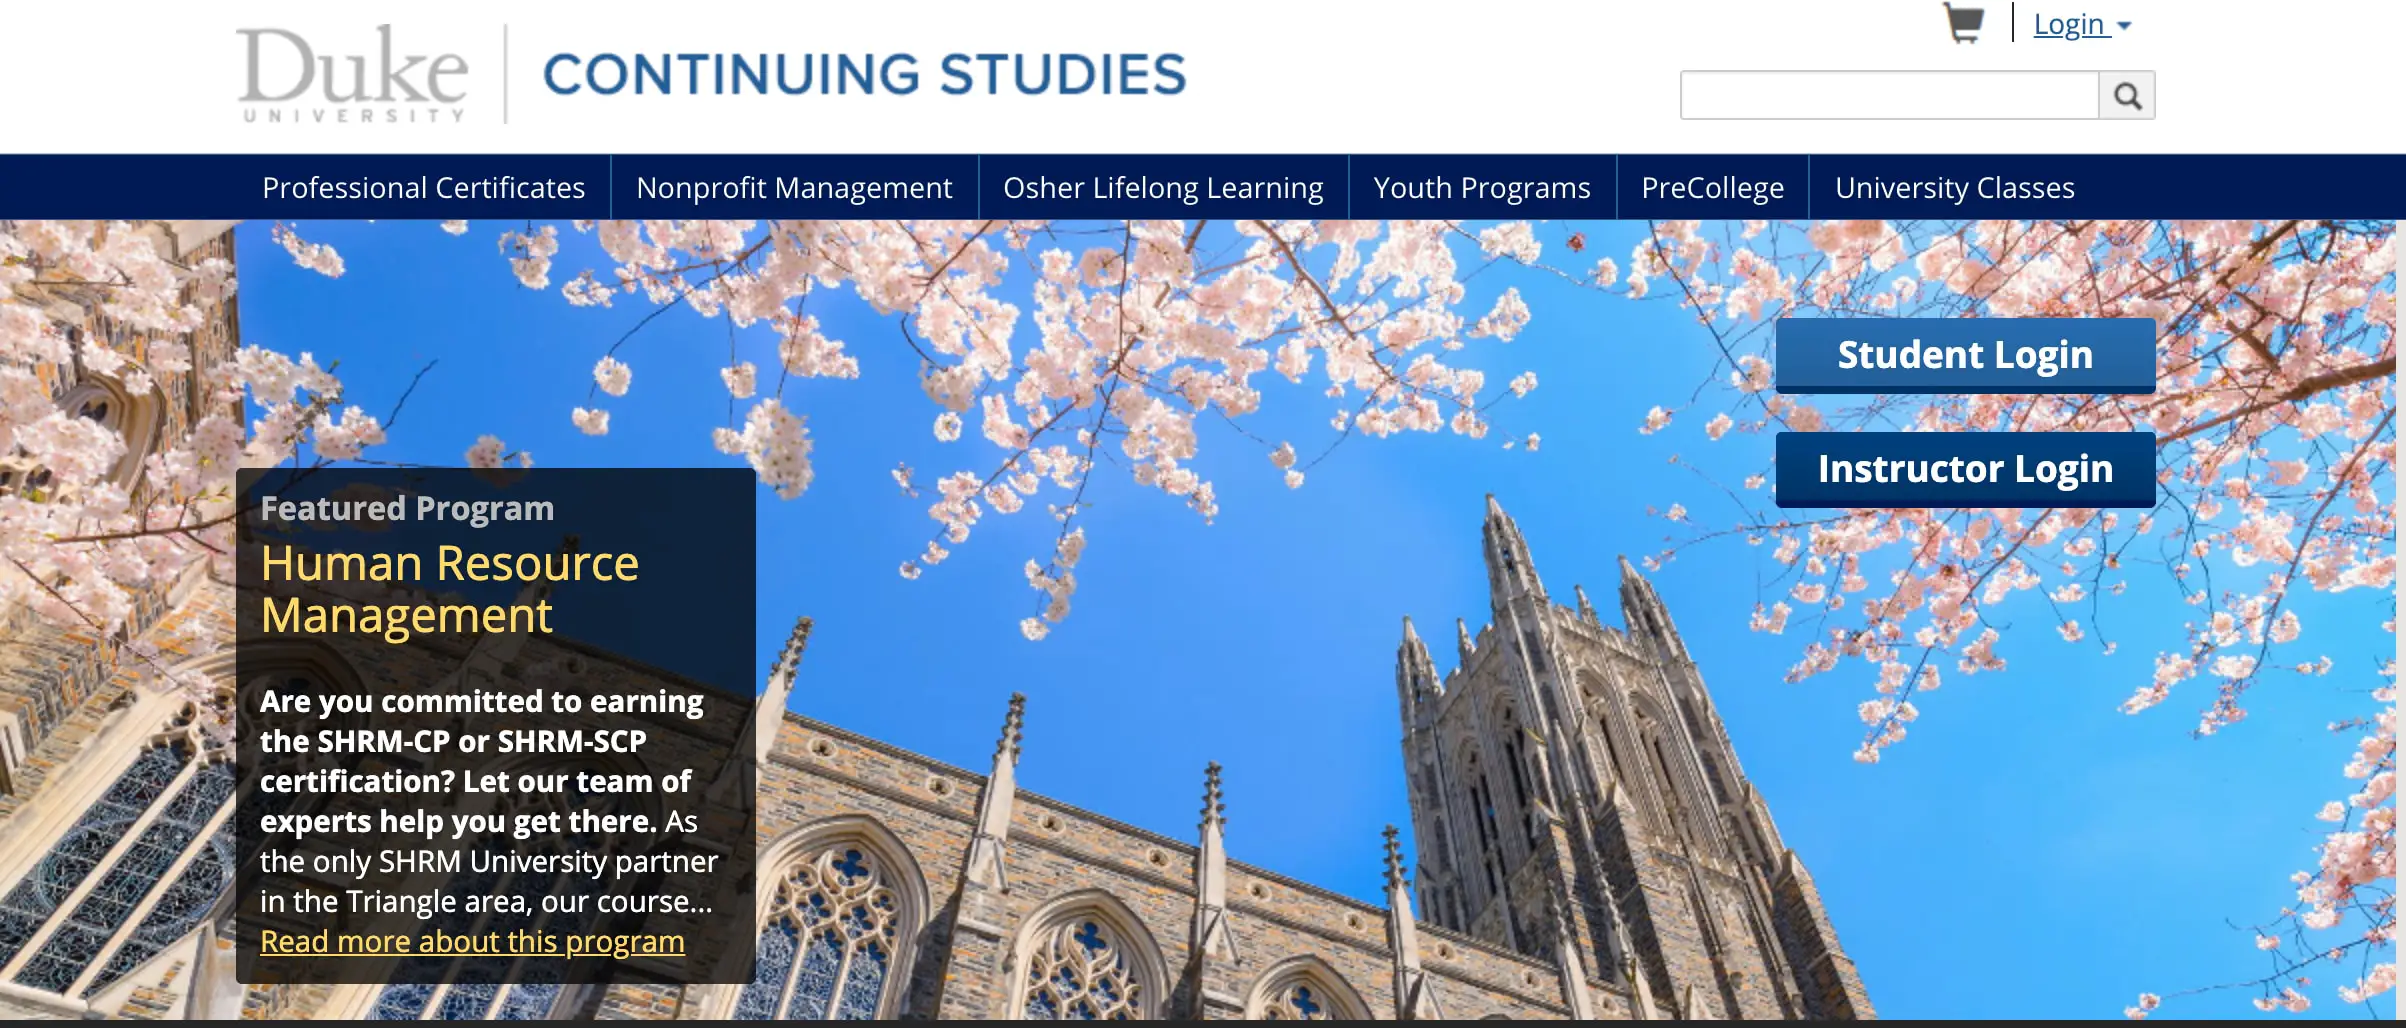 Duke University Digital Media certification